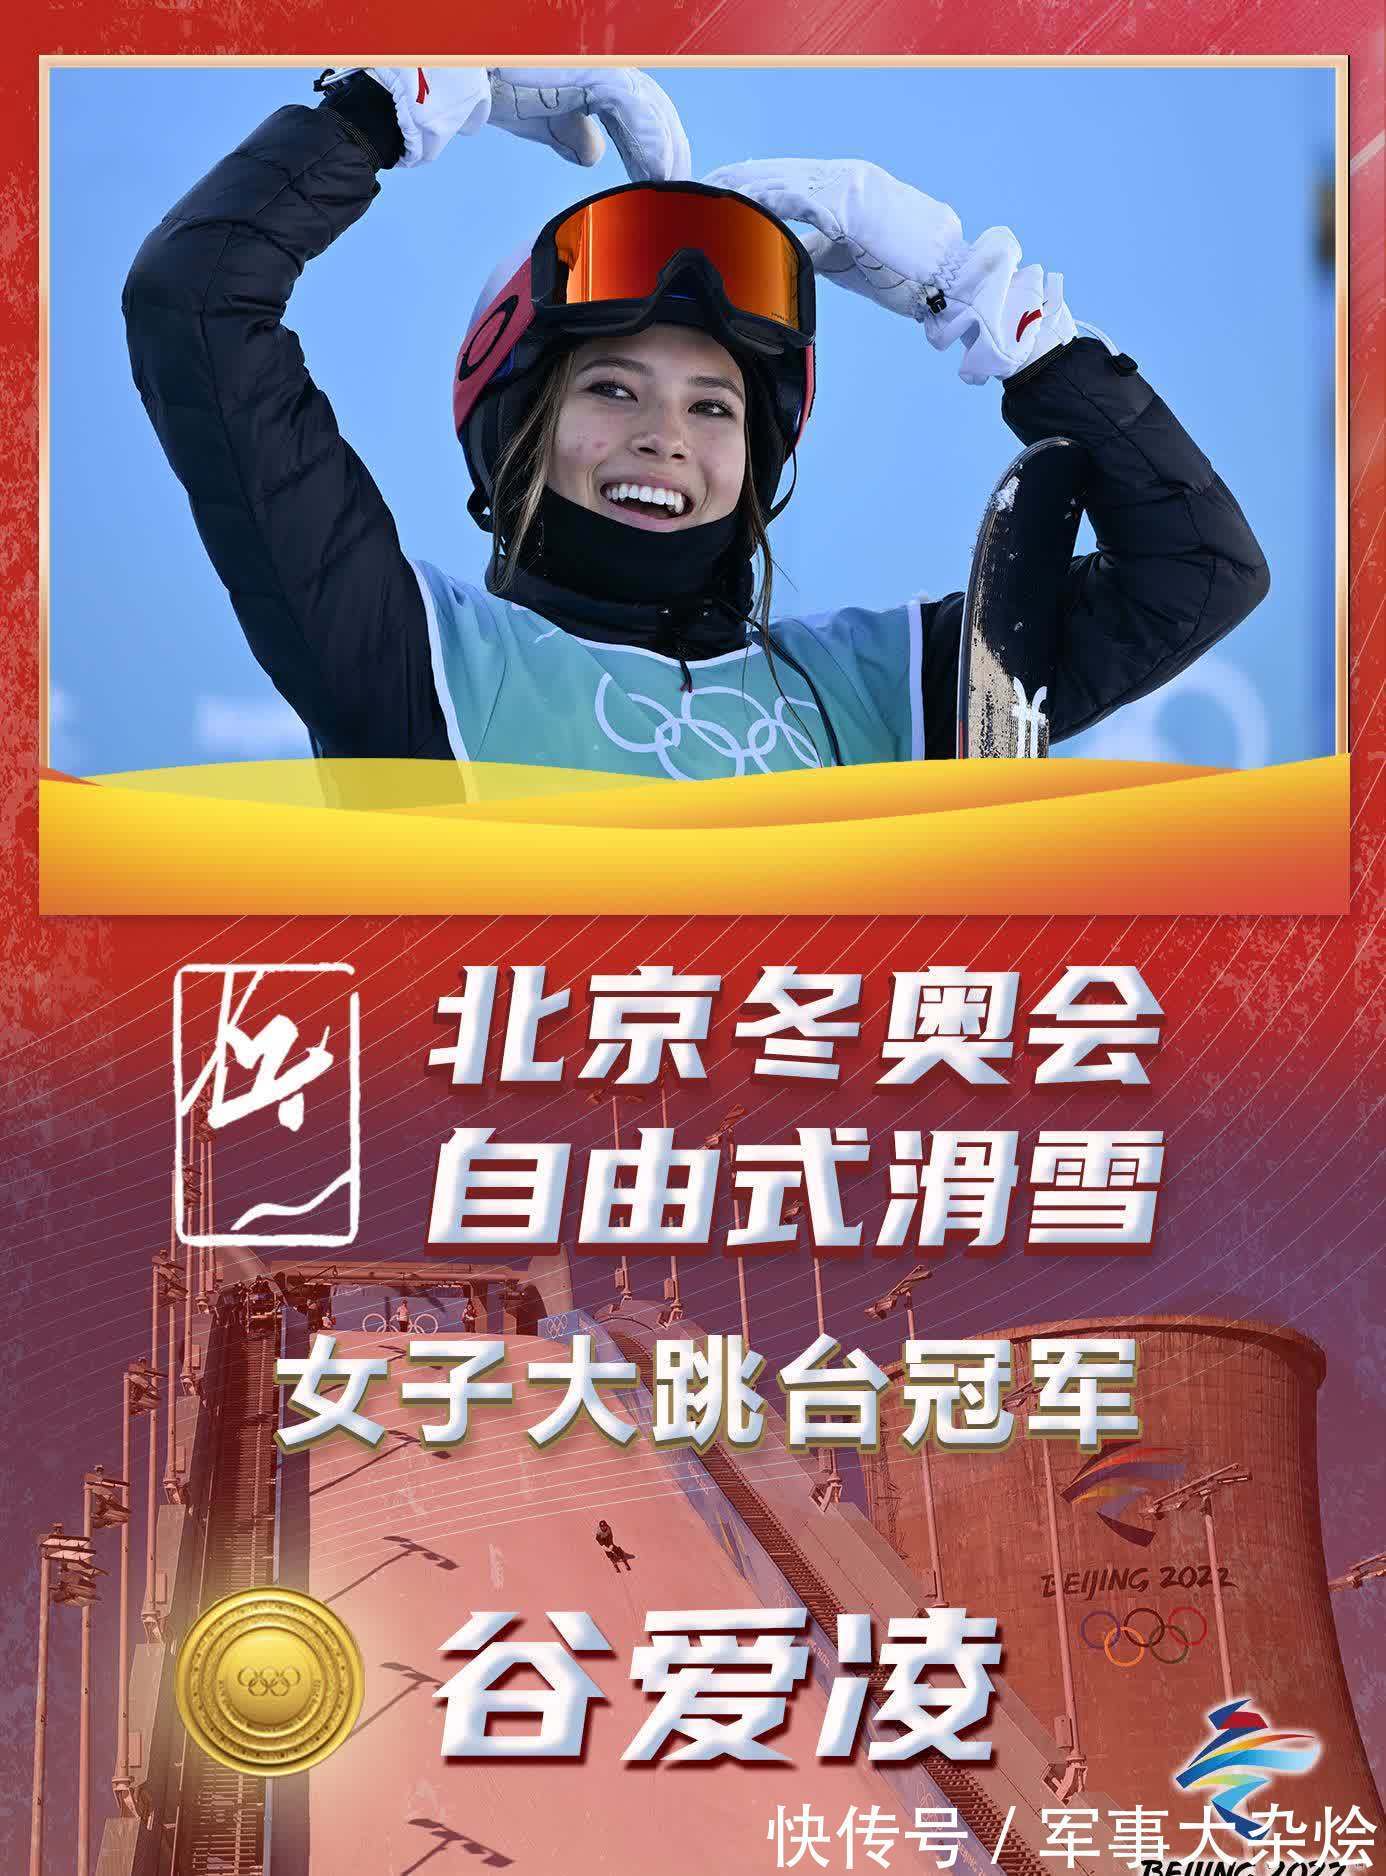 谷爱凌|［北京冬奥会］谷爱凌夺得自由式滑雪女子大跳台冠军